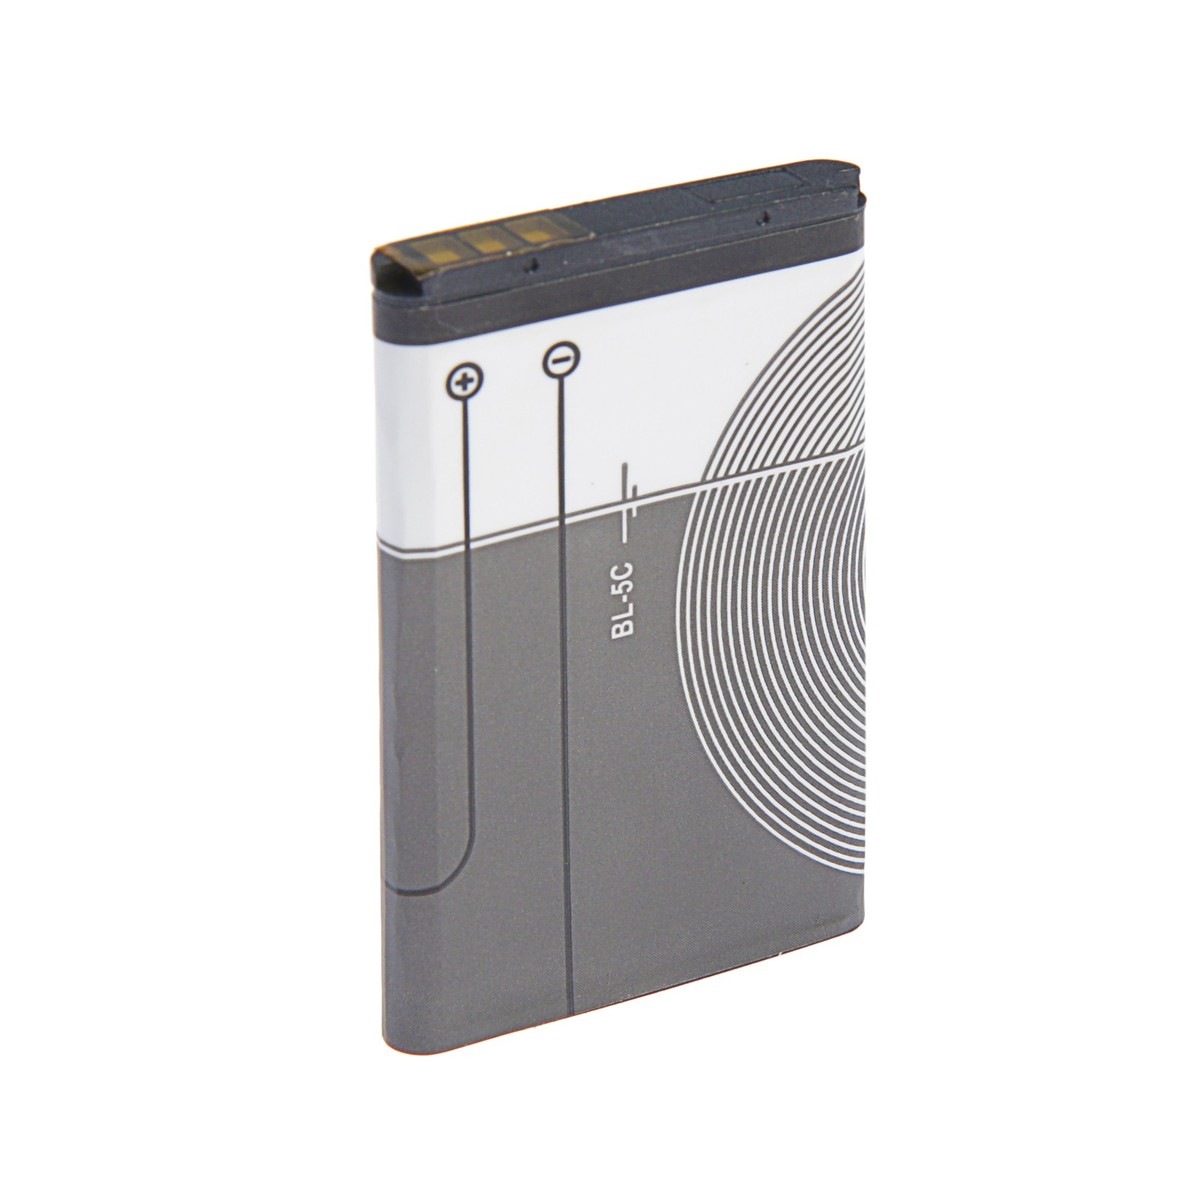 Аккумулятор luazon bl-5c, для портативных колонок, мобильных устройств, 3.7 в, 1020 мач схемотехника электропреобразовательных устройств